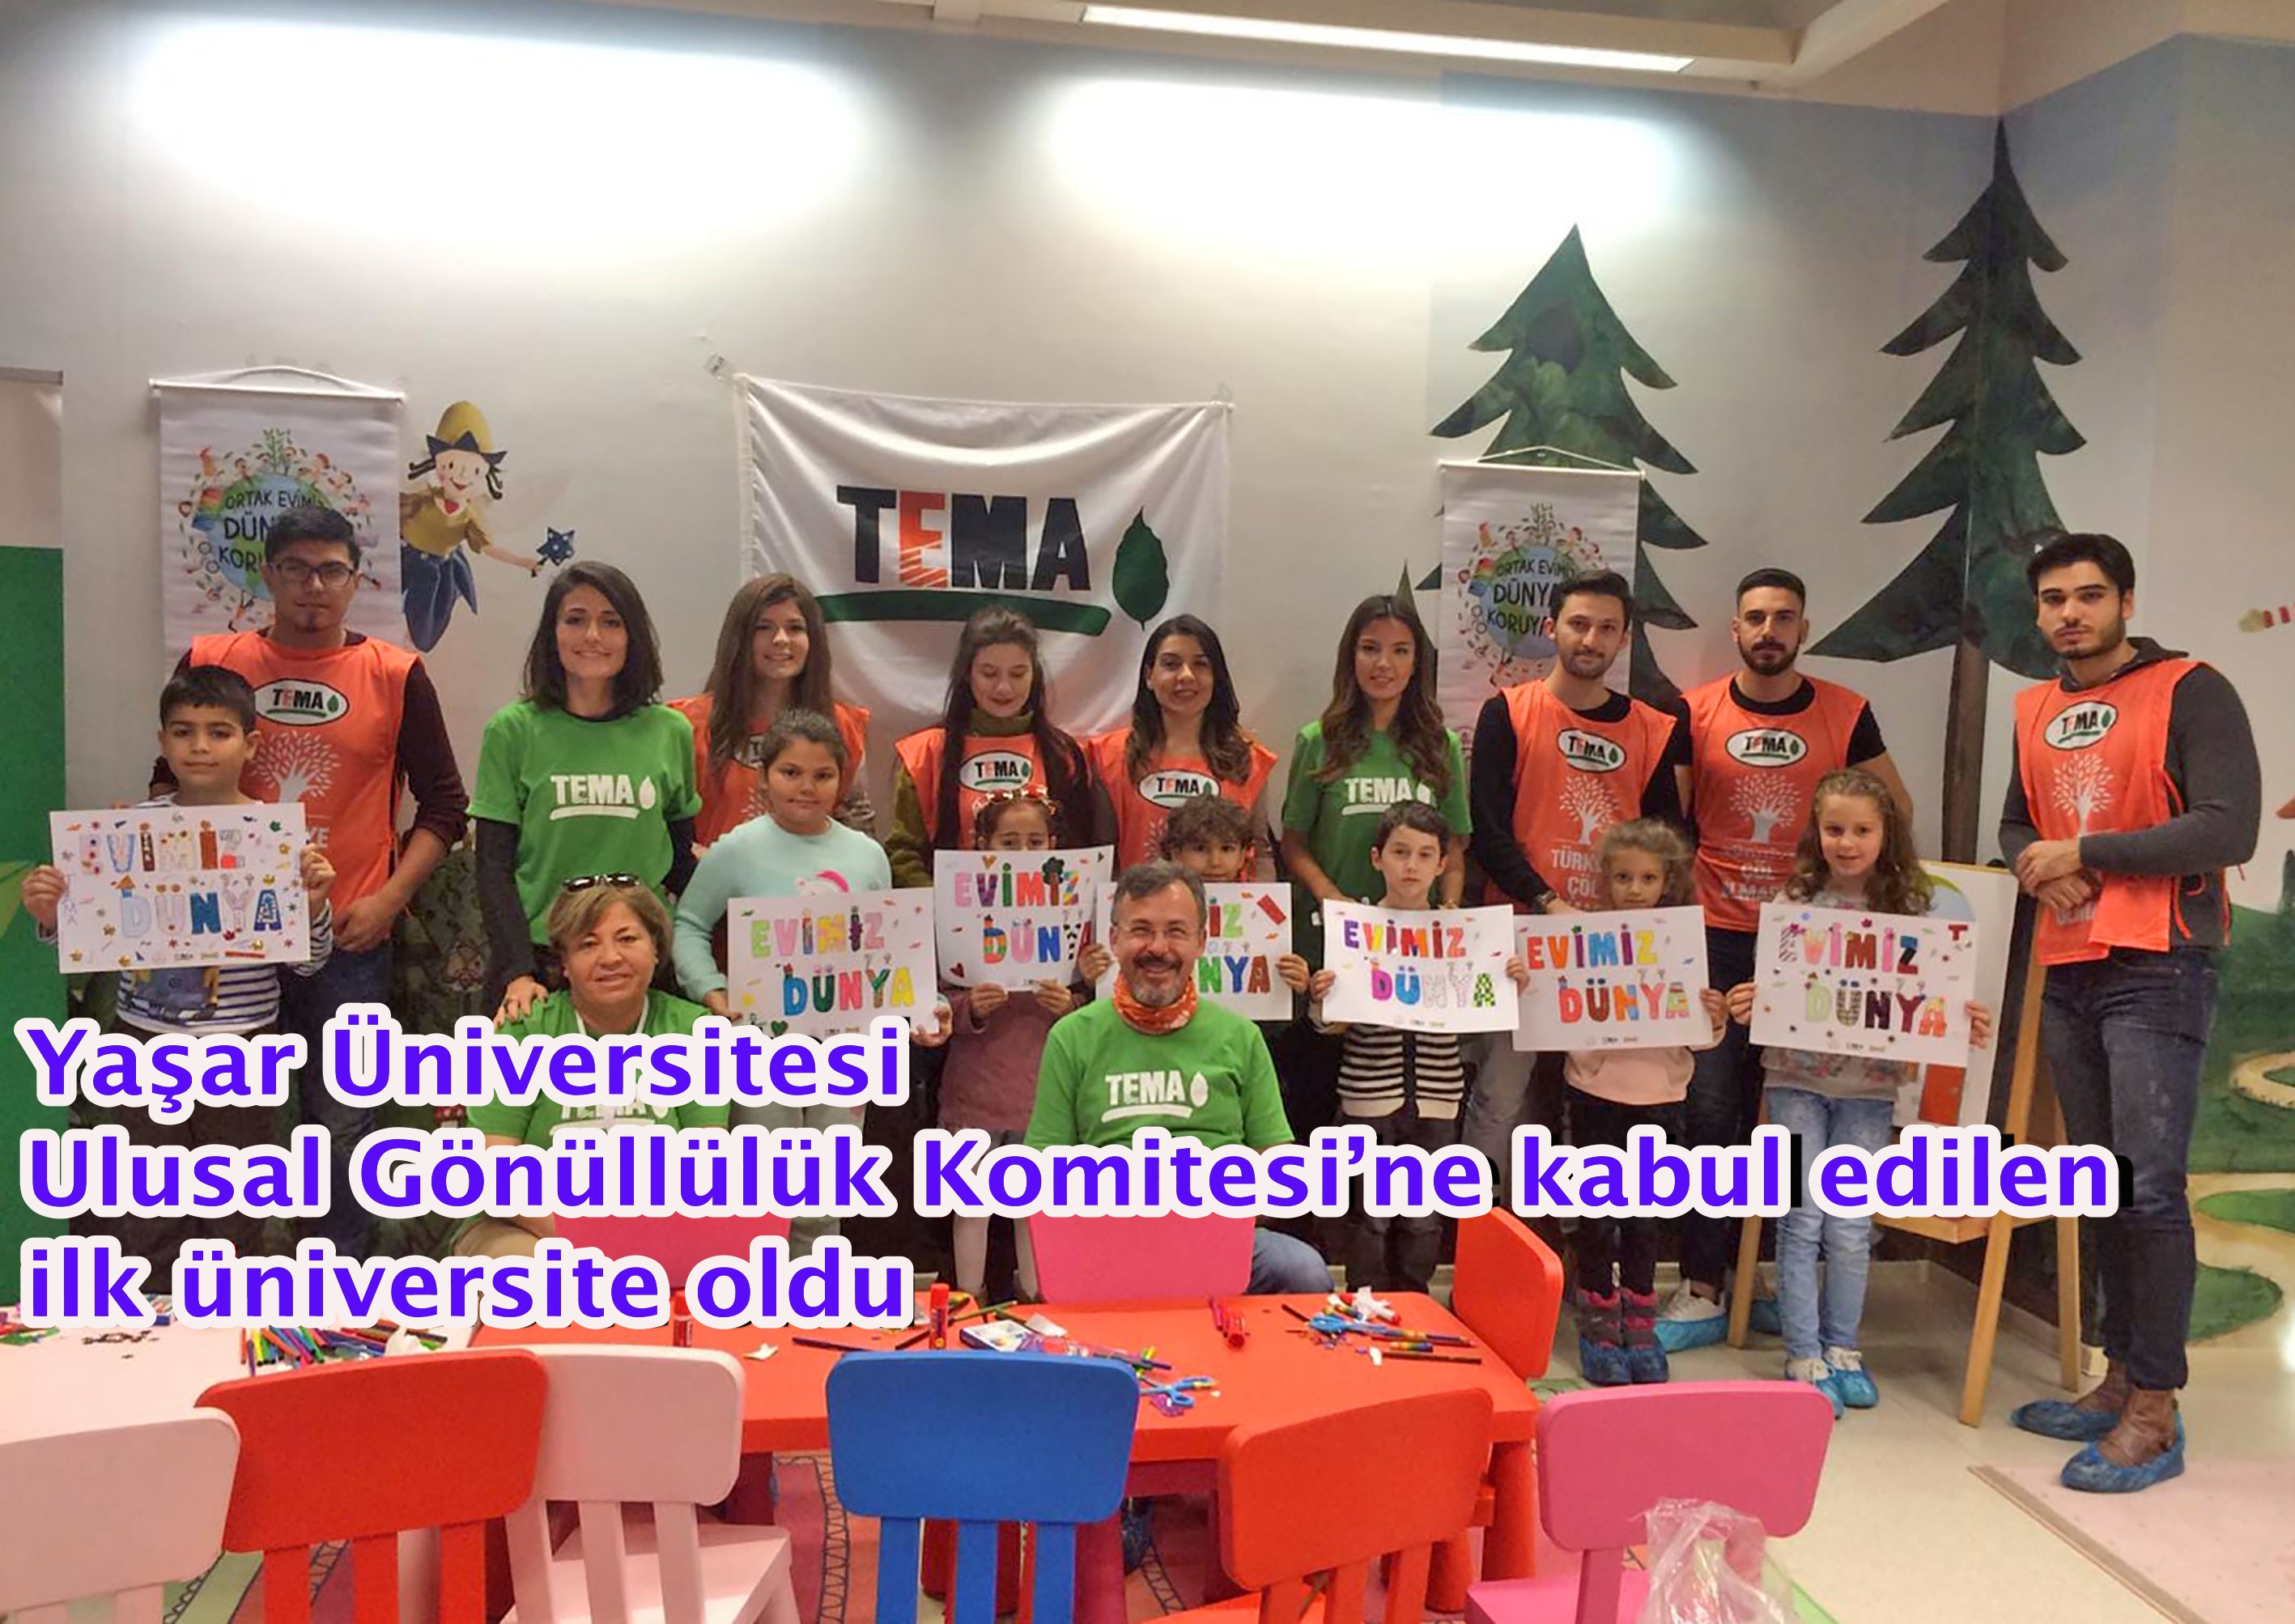 Yaşar Üniversitesi Ulusal Gönüllülük Komitesi’ne kabul edilen ilk üniversite oldu